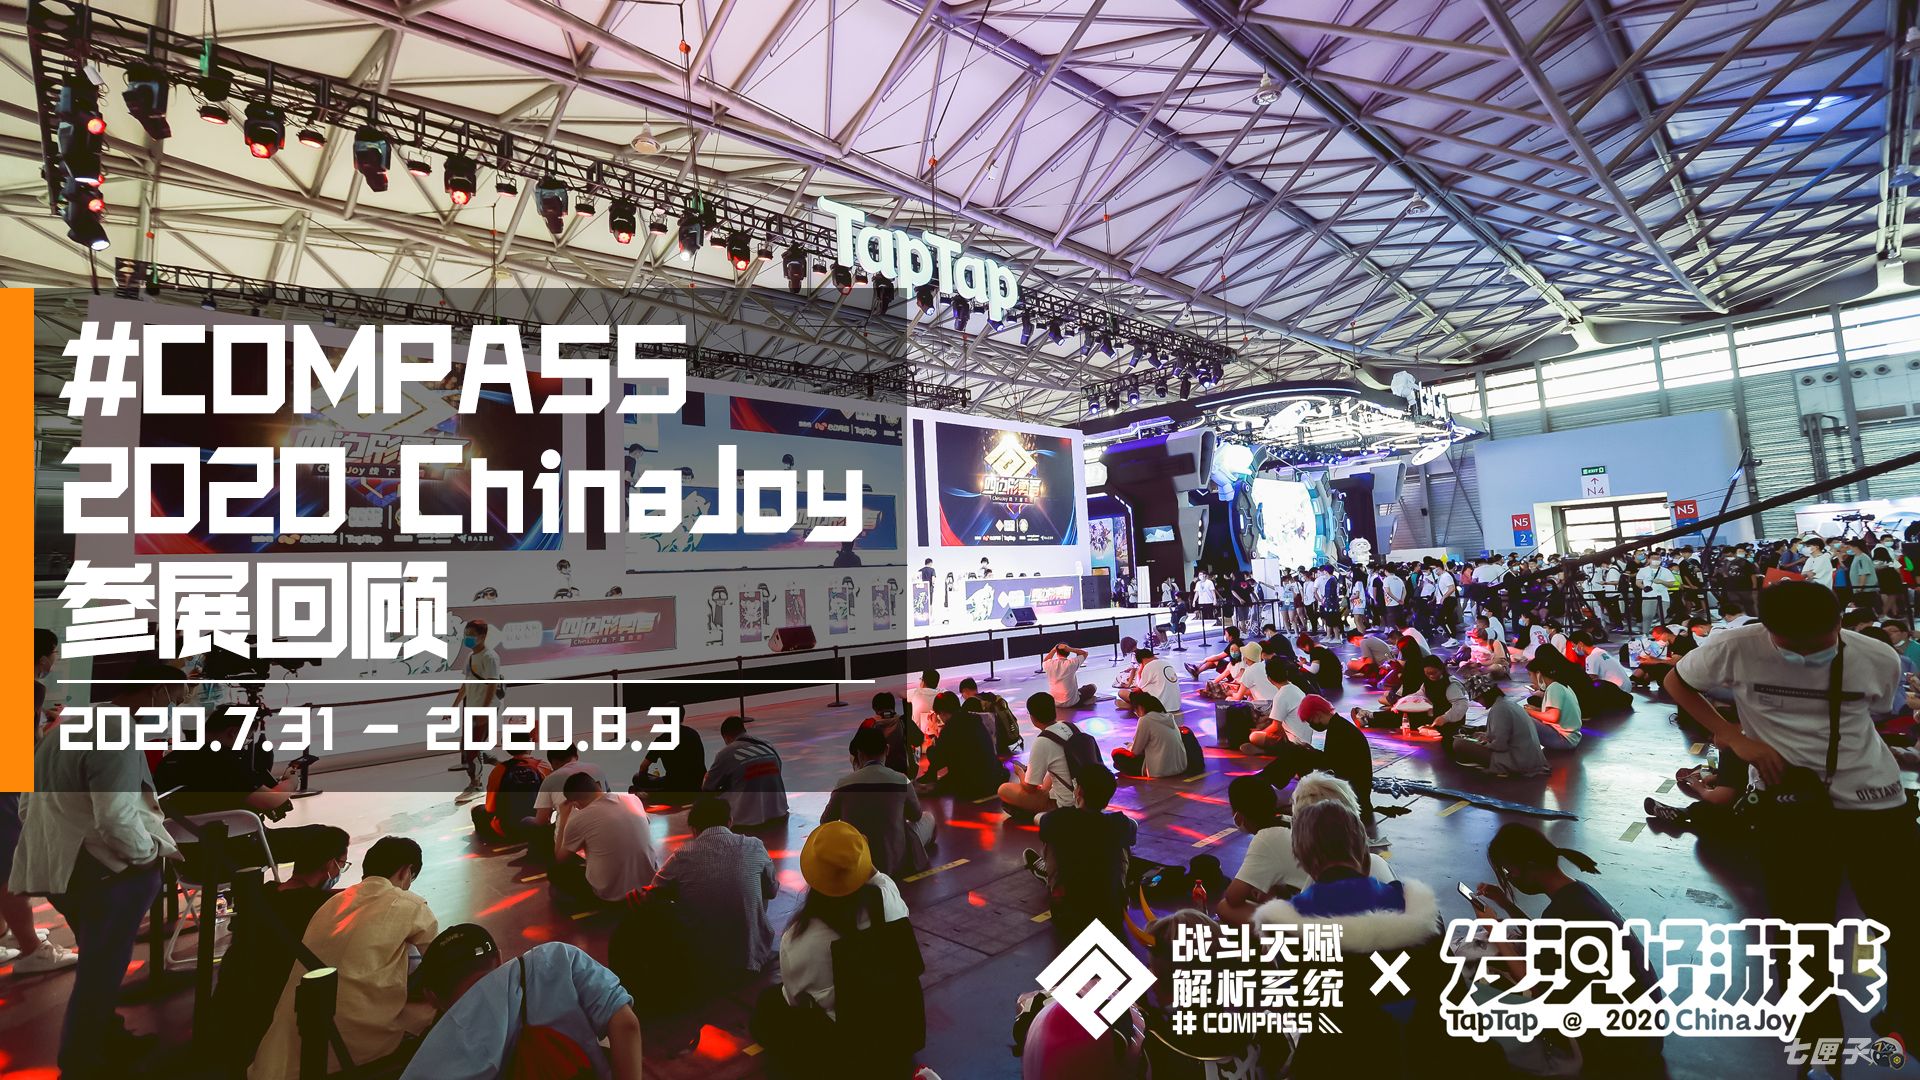 我们的纪念派对！#COMPASS 战斗天赋解析系统2020 ChinaJoy回顾